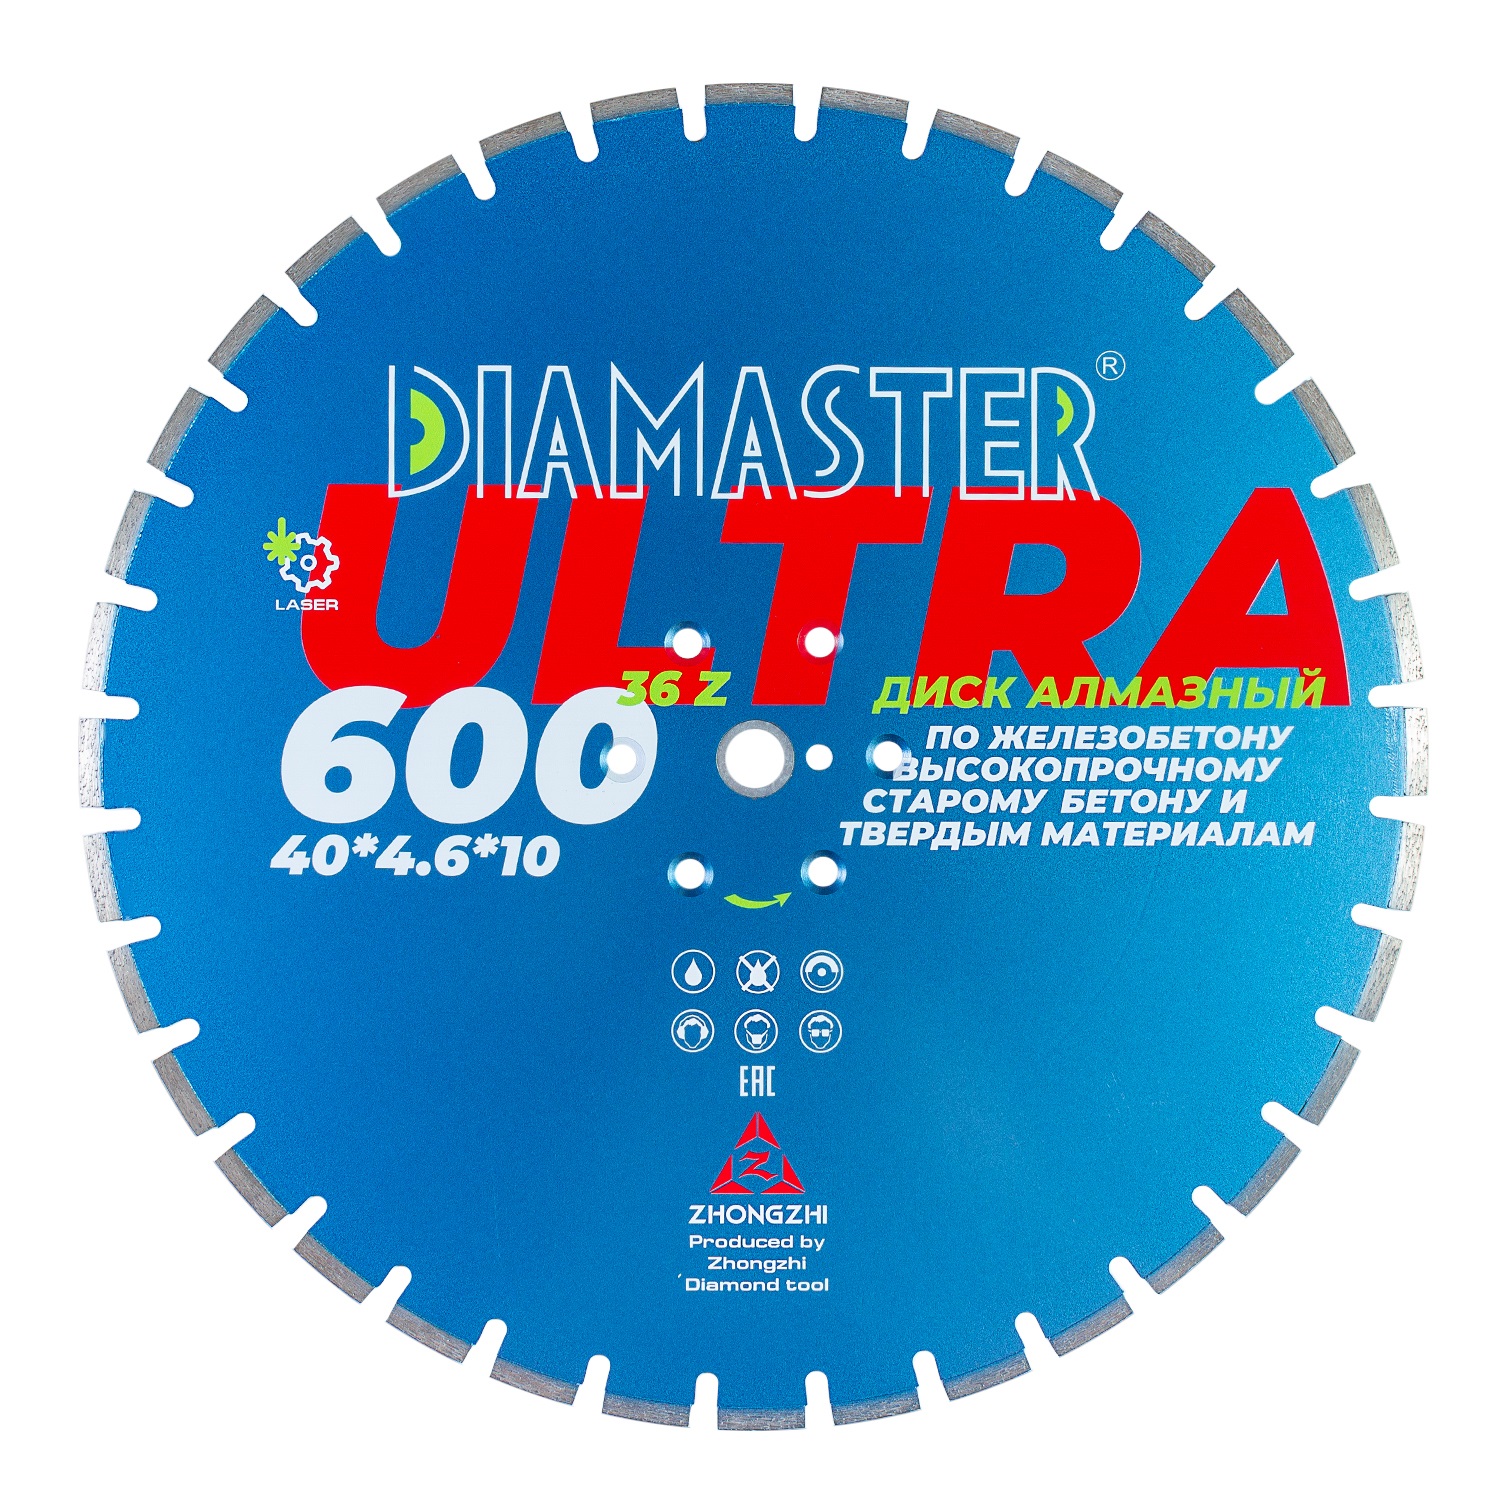 Диск сегментный Laser ULTRA д.600*3,2*25,4 (40*4,6*10)мм | 36z/железобетон/wet/dry DIAMASTER диск сегментный laser arix razor д 400 2 8 25 4 40 3 6 12 мм 24z железобетон wet dry diamaster